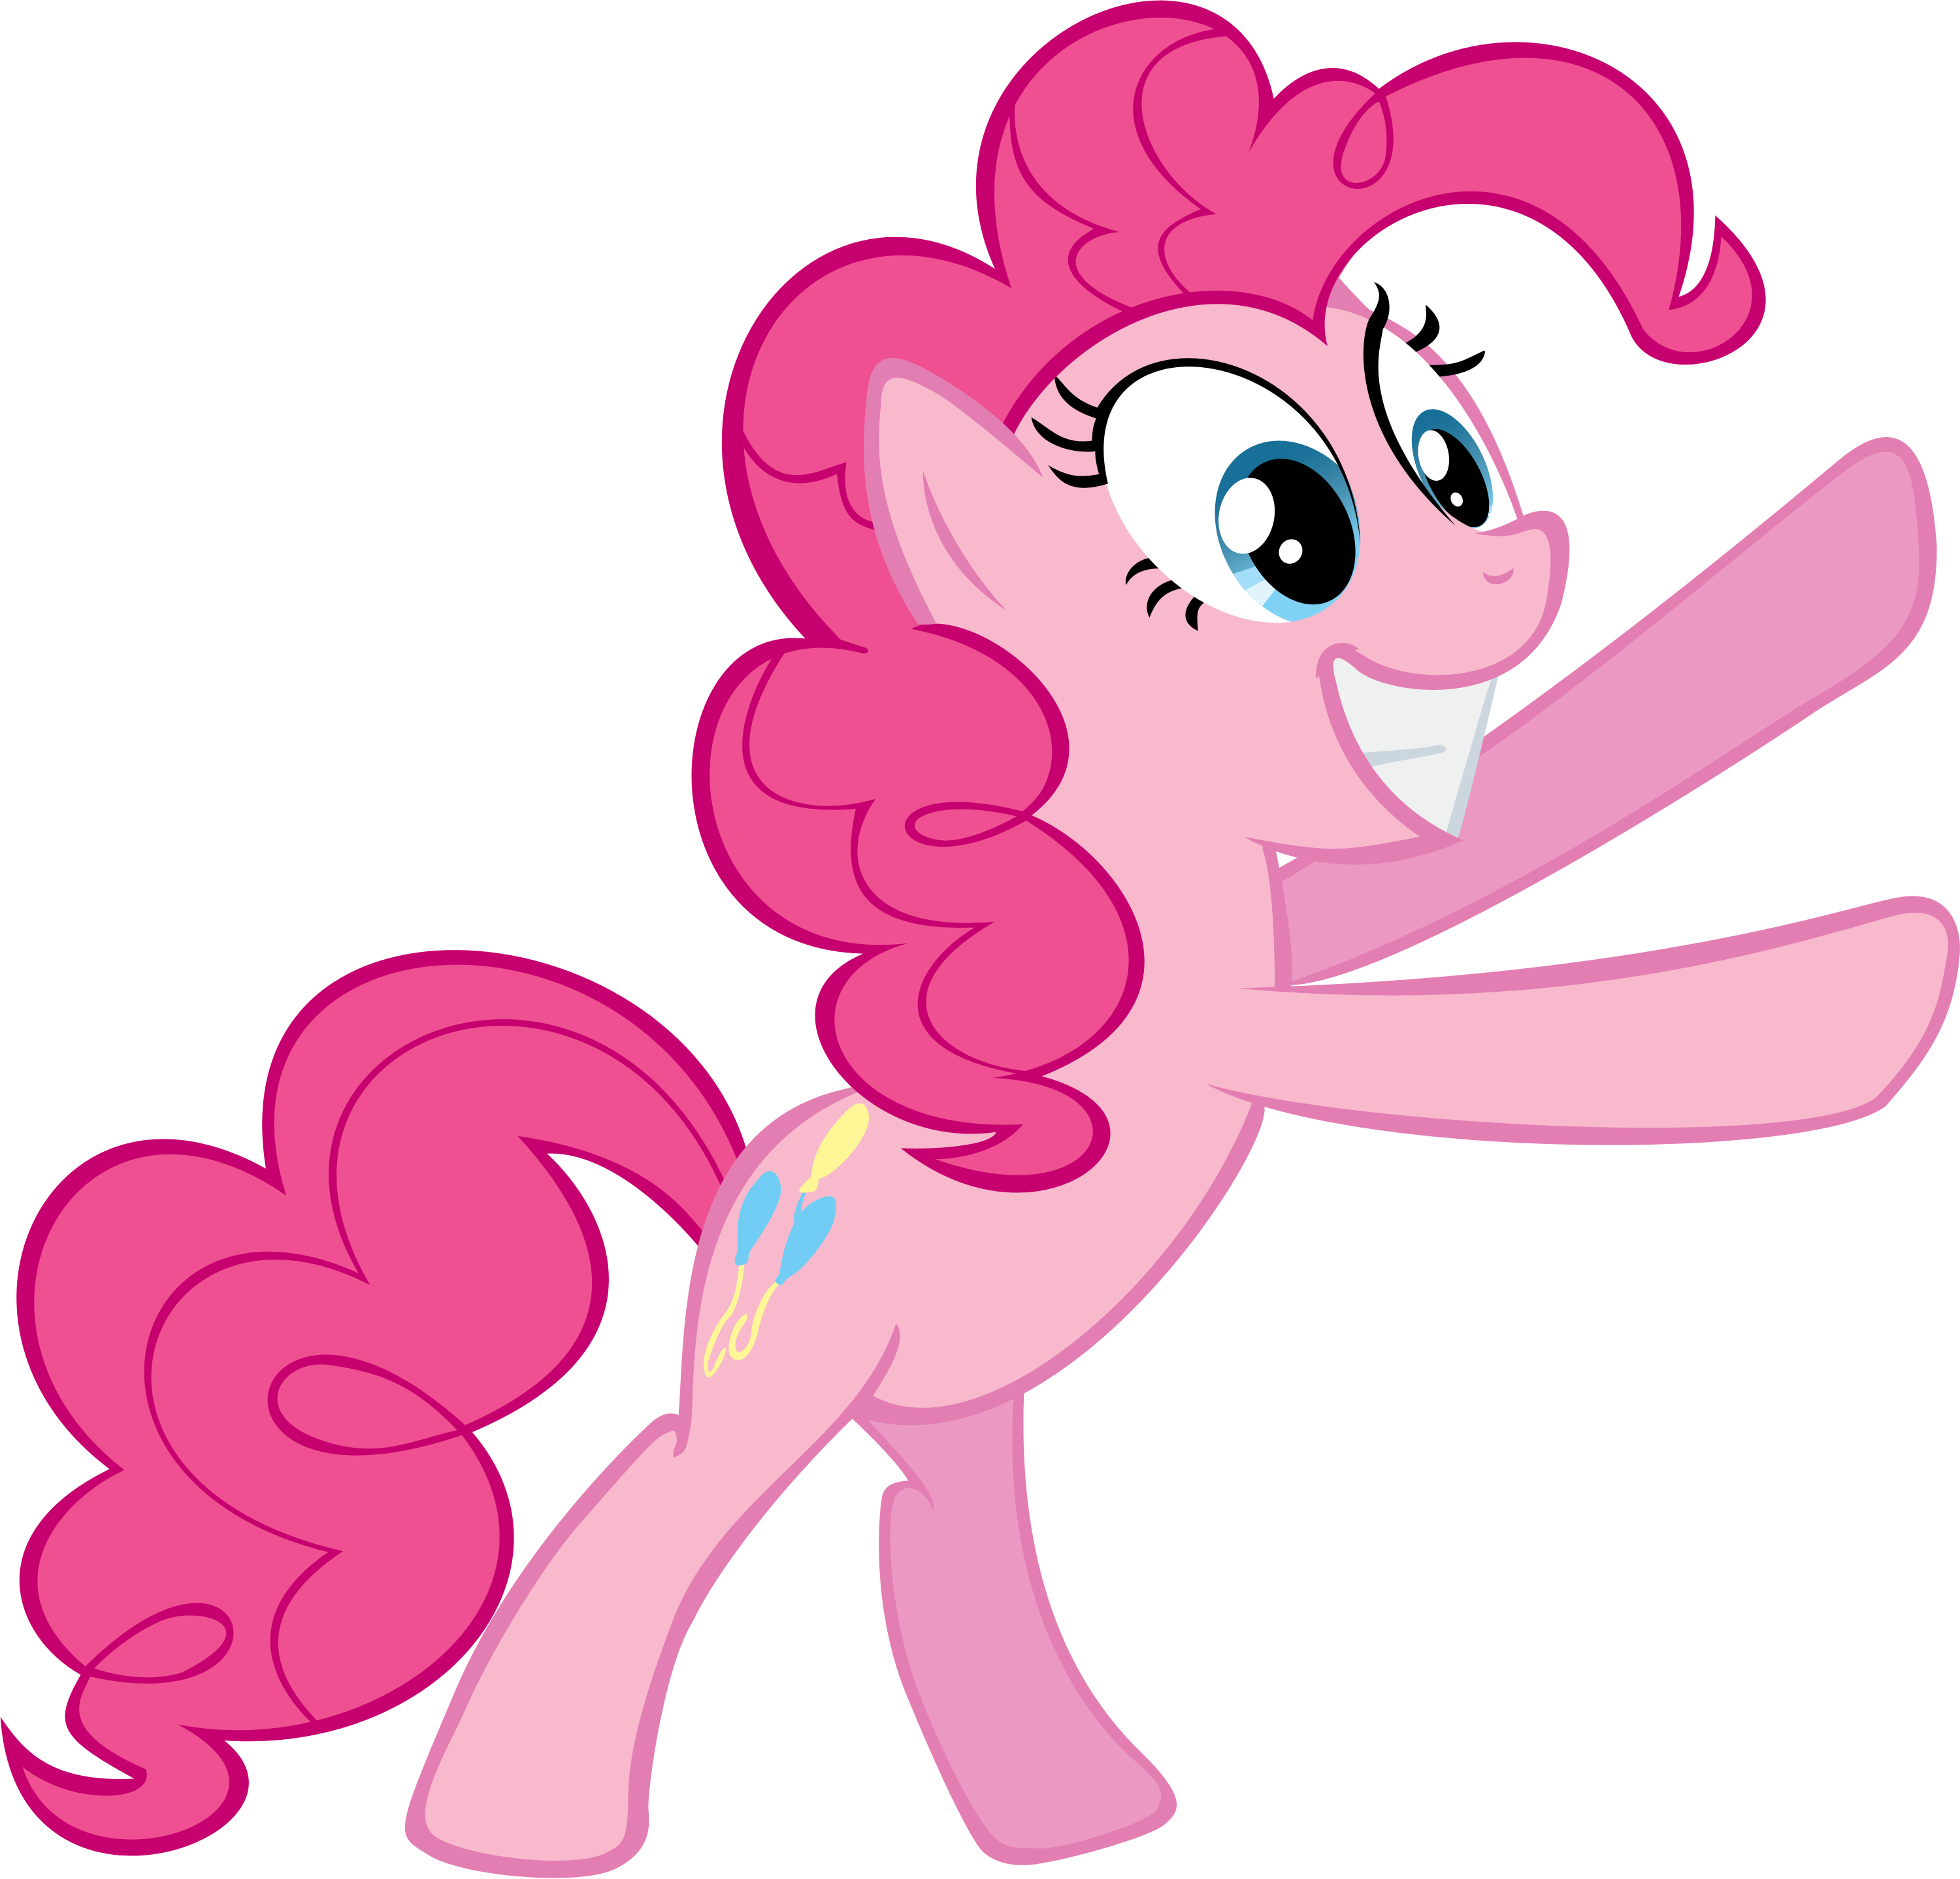 Pinkie Pie 'Tah-Dah'